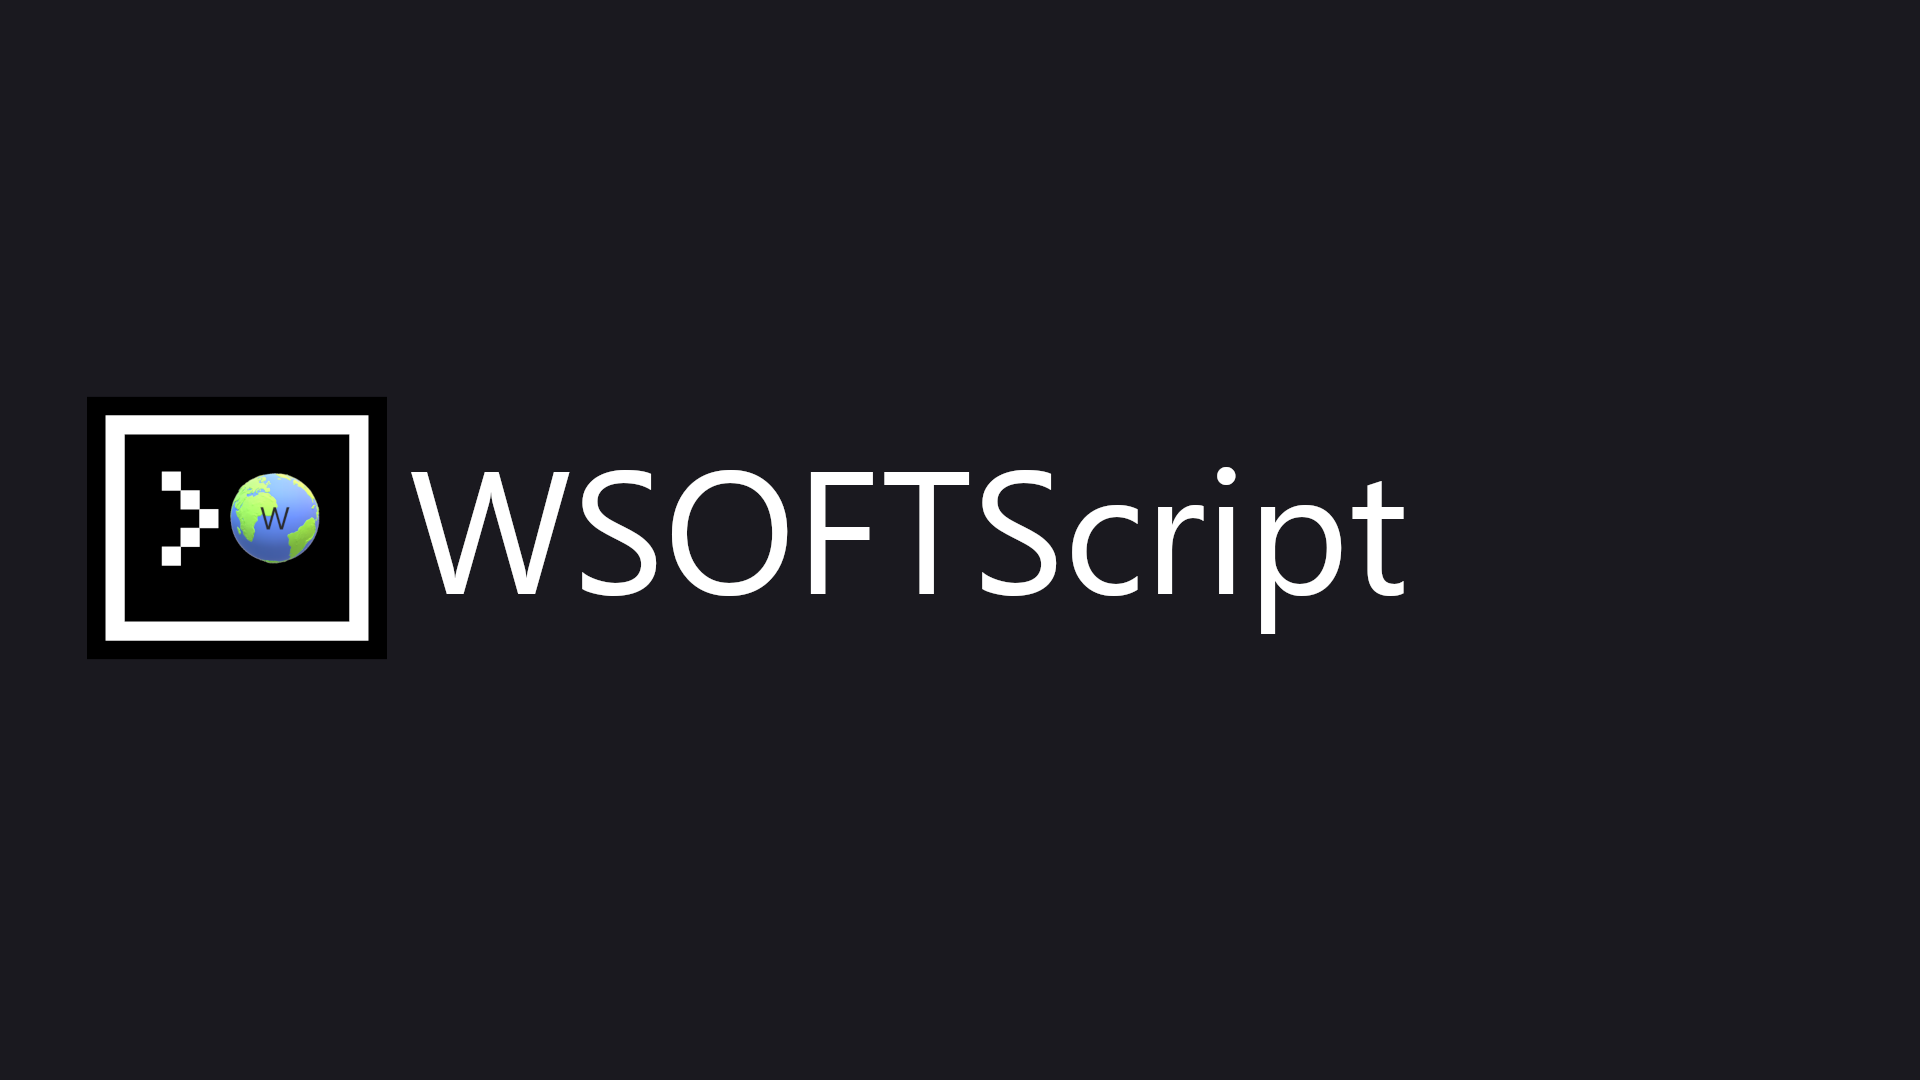 WSOFTScriptの主なロゴ